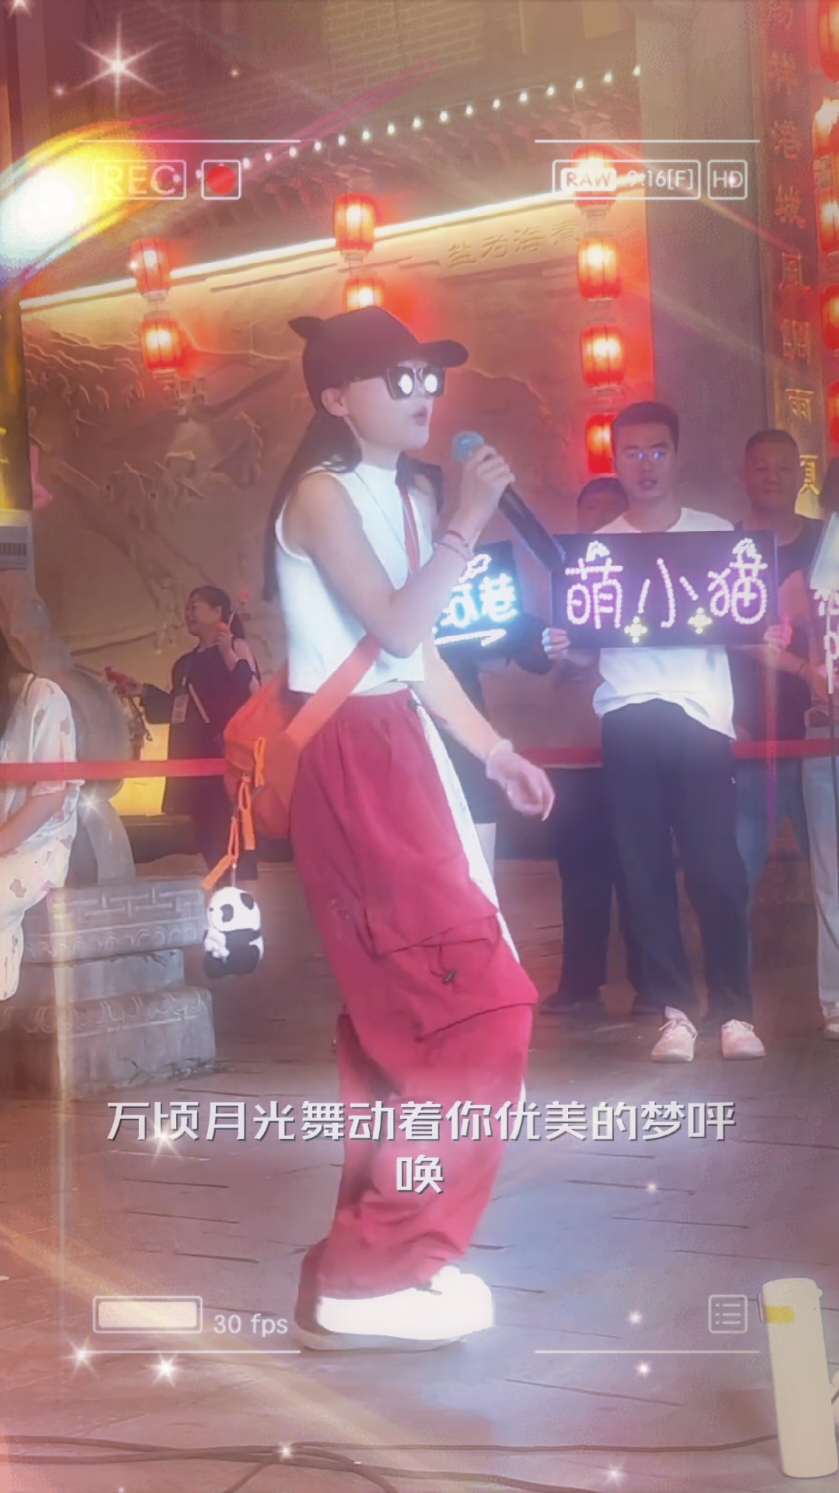 เพลงเพราะๆๆ💕💕#คนไทยรู้ทัน #TikTokกินเที่ยว #เต้นเพลงจีน #เต้นน่ารัก #สาวจีน #สวยน่ารัก #เทรนด์วันนี้ #ดันขึ้นฟีดที #เสื้อผ้าแฟชั่น #บันเทิงtiktok 